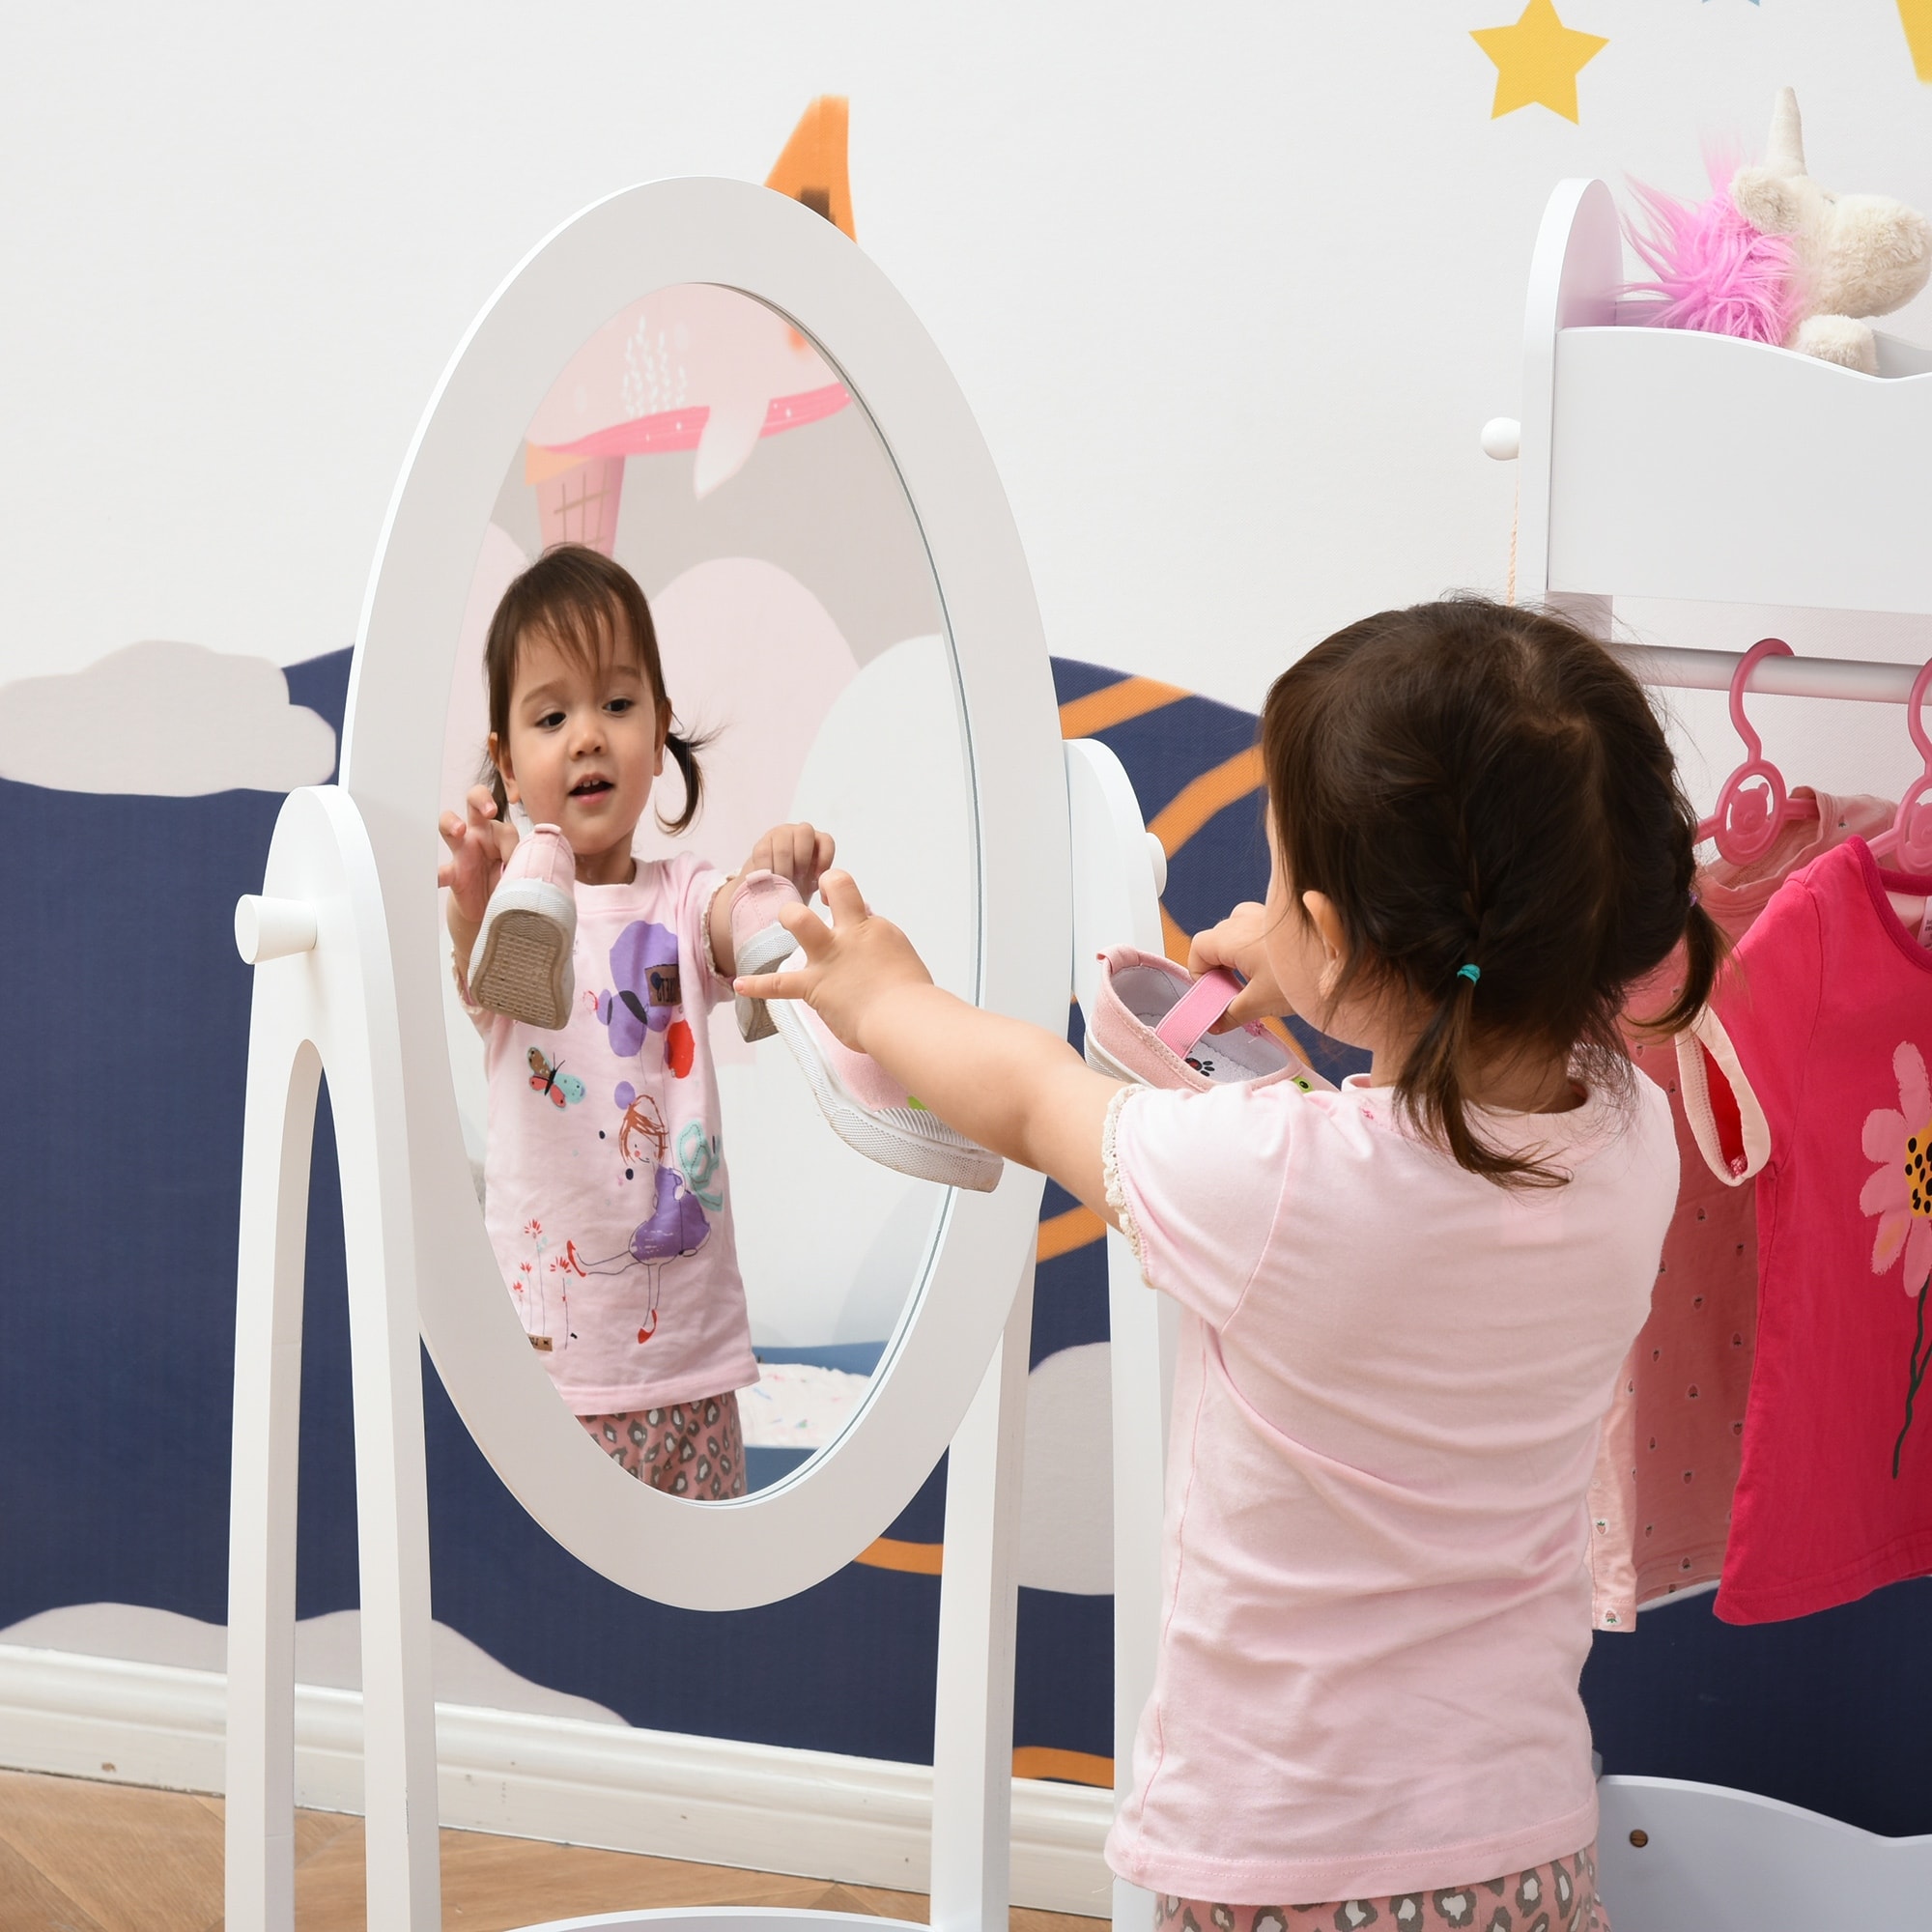 HOMCOM Full Length Mirror for Kids Girls Bedroom Decor, White - 15.75"L x 11.75"W x 41"H